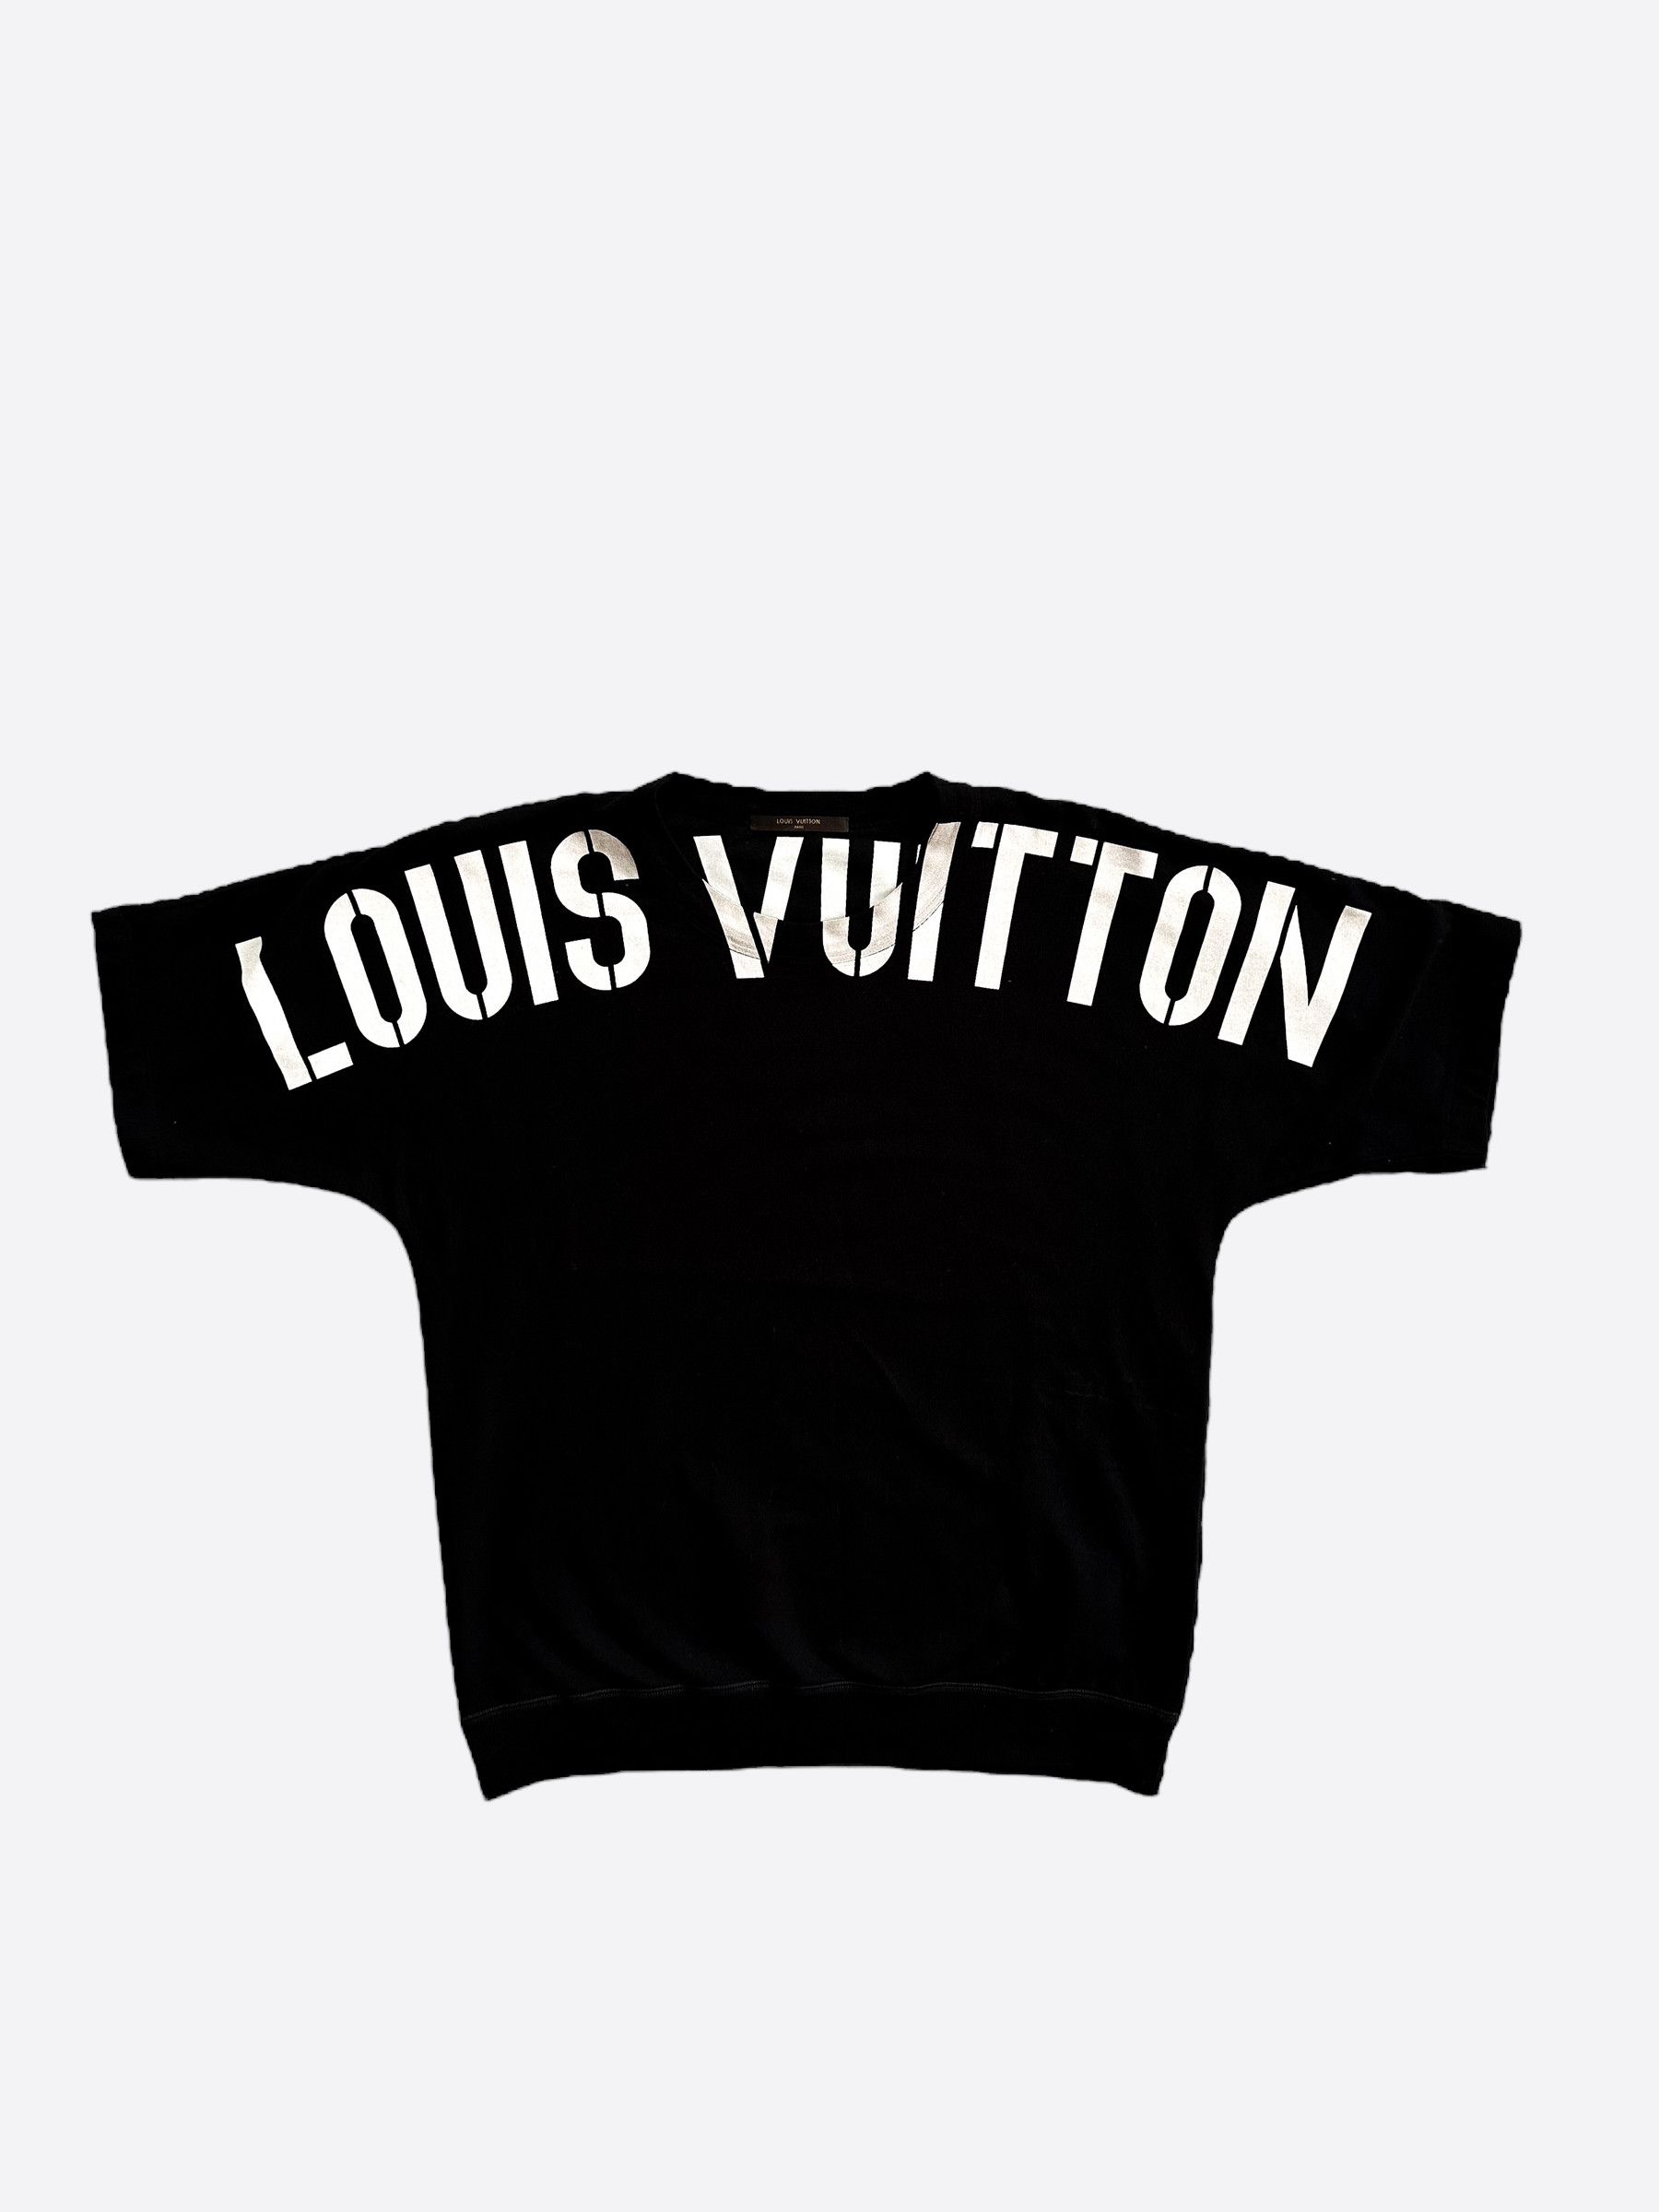 Louis Vuitton x Fragment - Authenticated Jacket - Cotton Black Plain For Man, Good condition